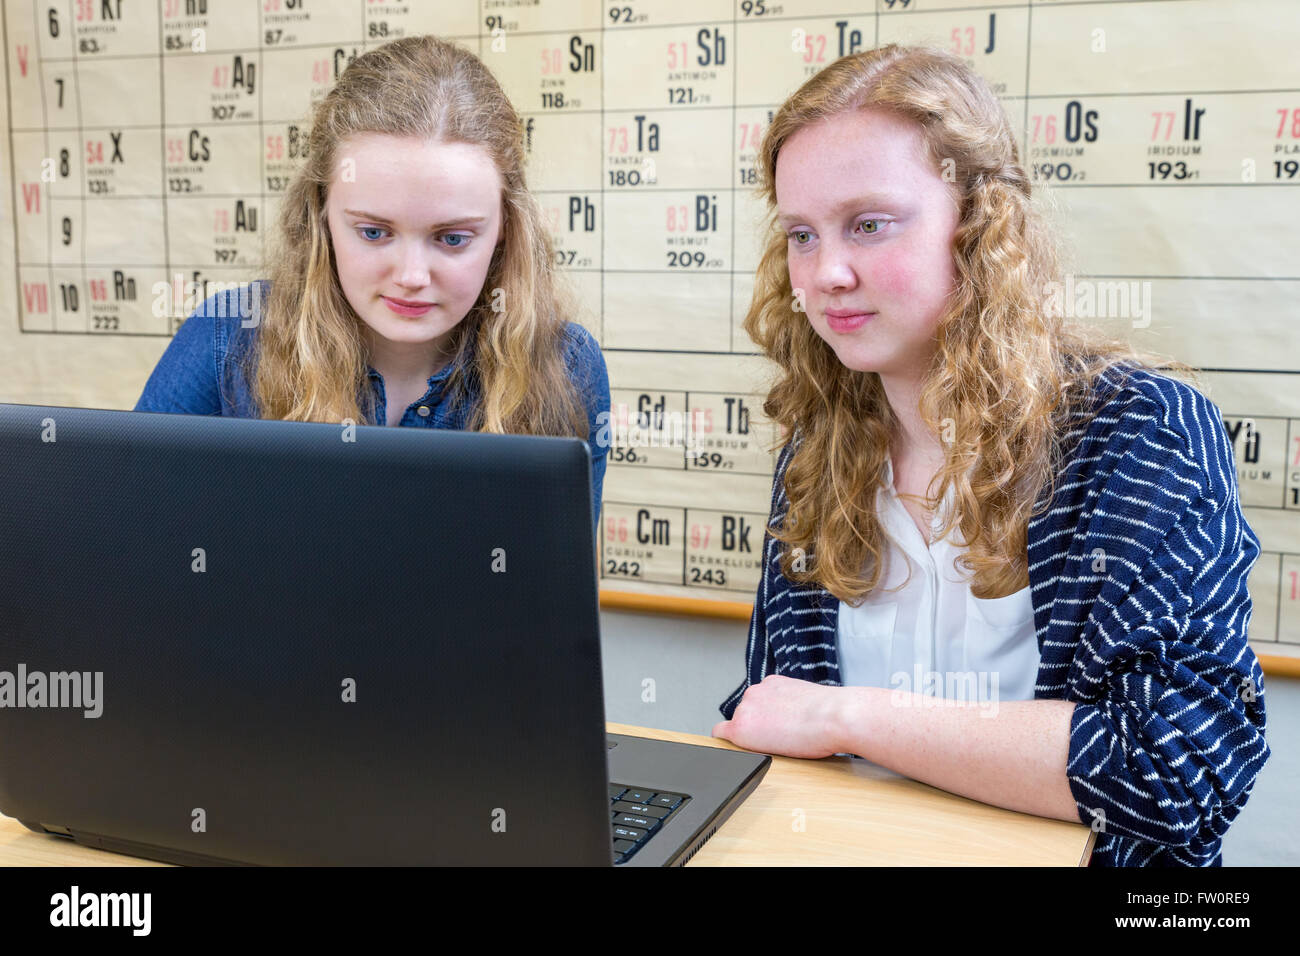 Deux élèves de sexe féminin de race blanche à la leçon de chimie à l'ordinateur Banque D'Images